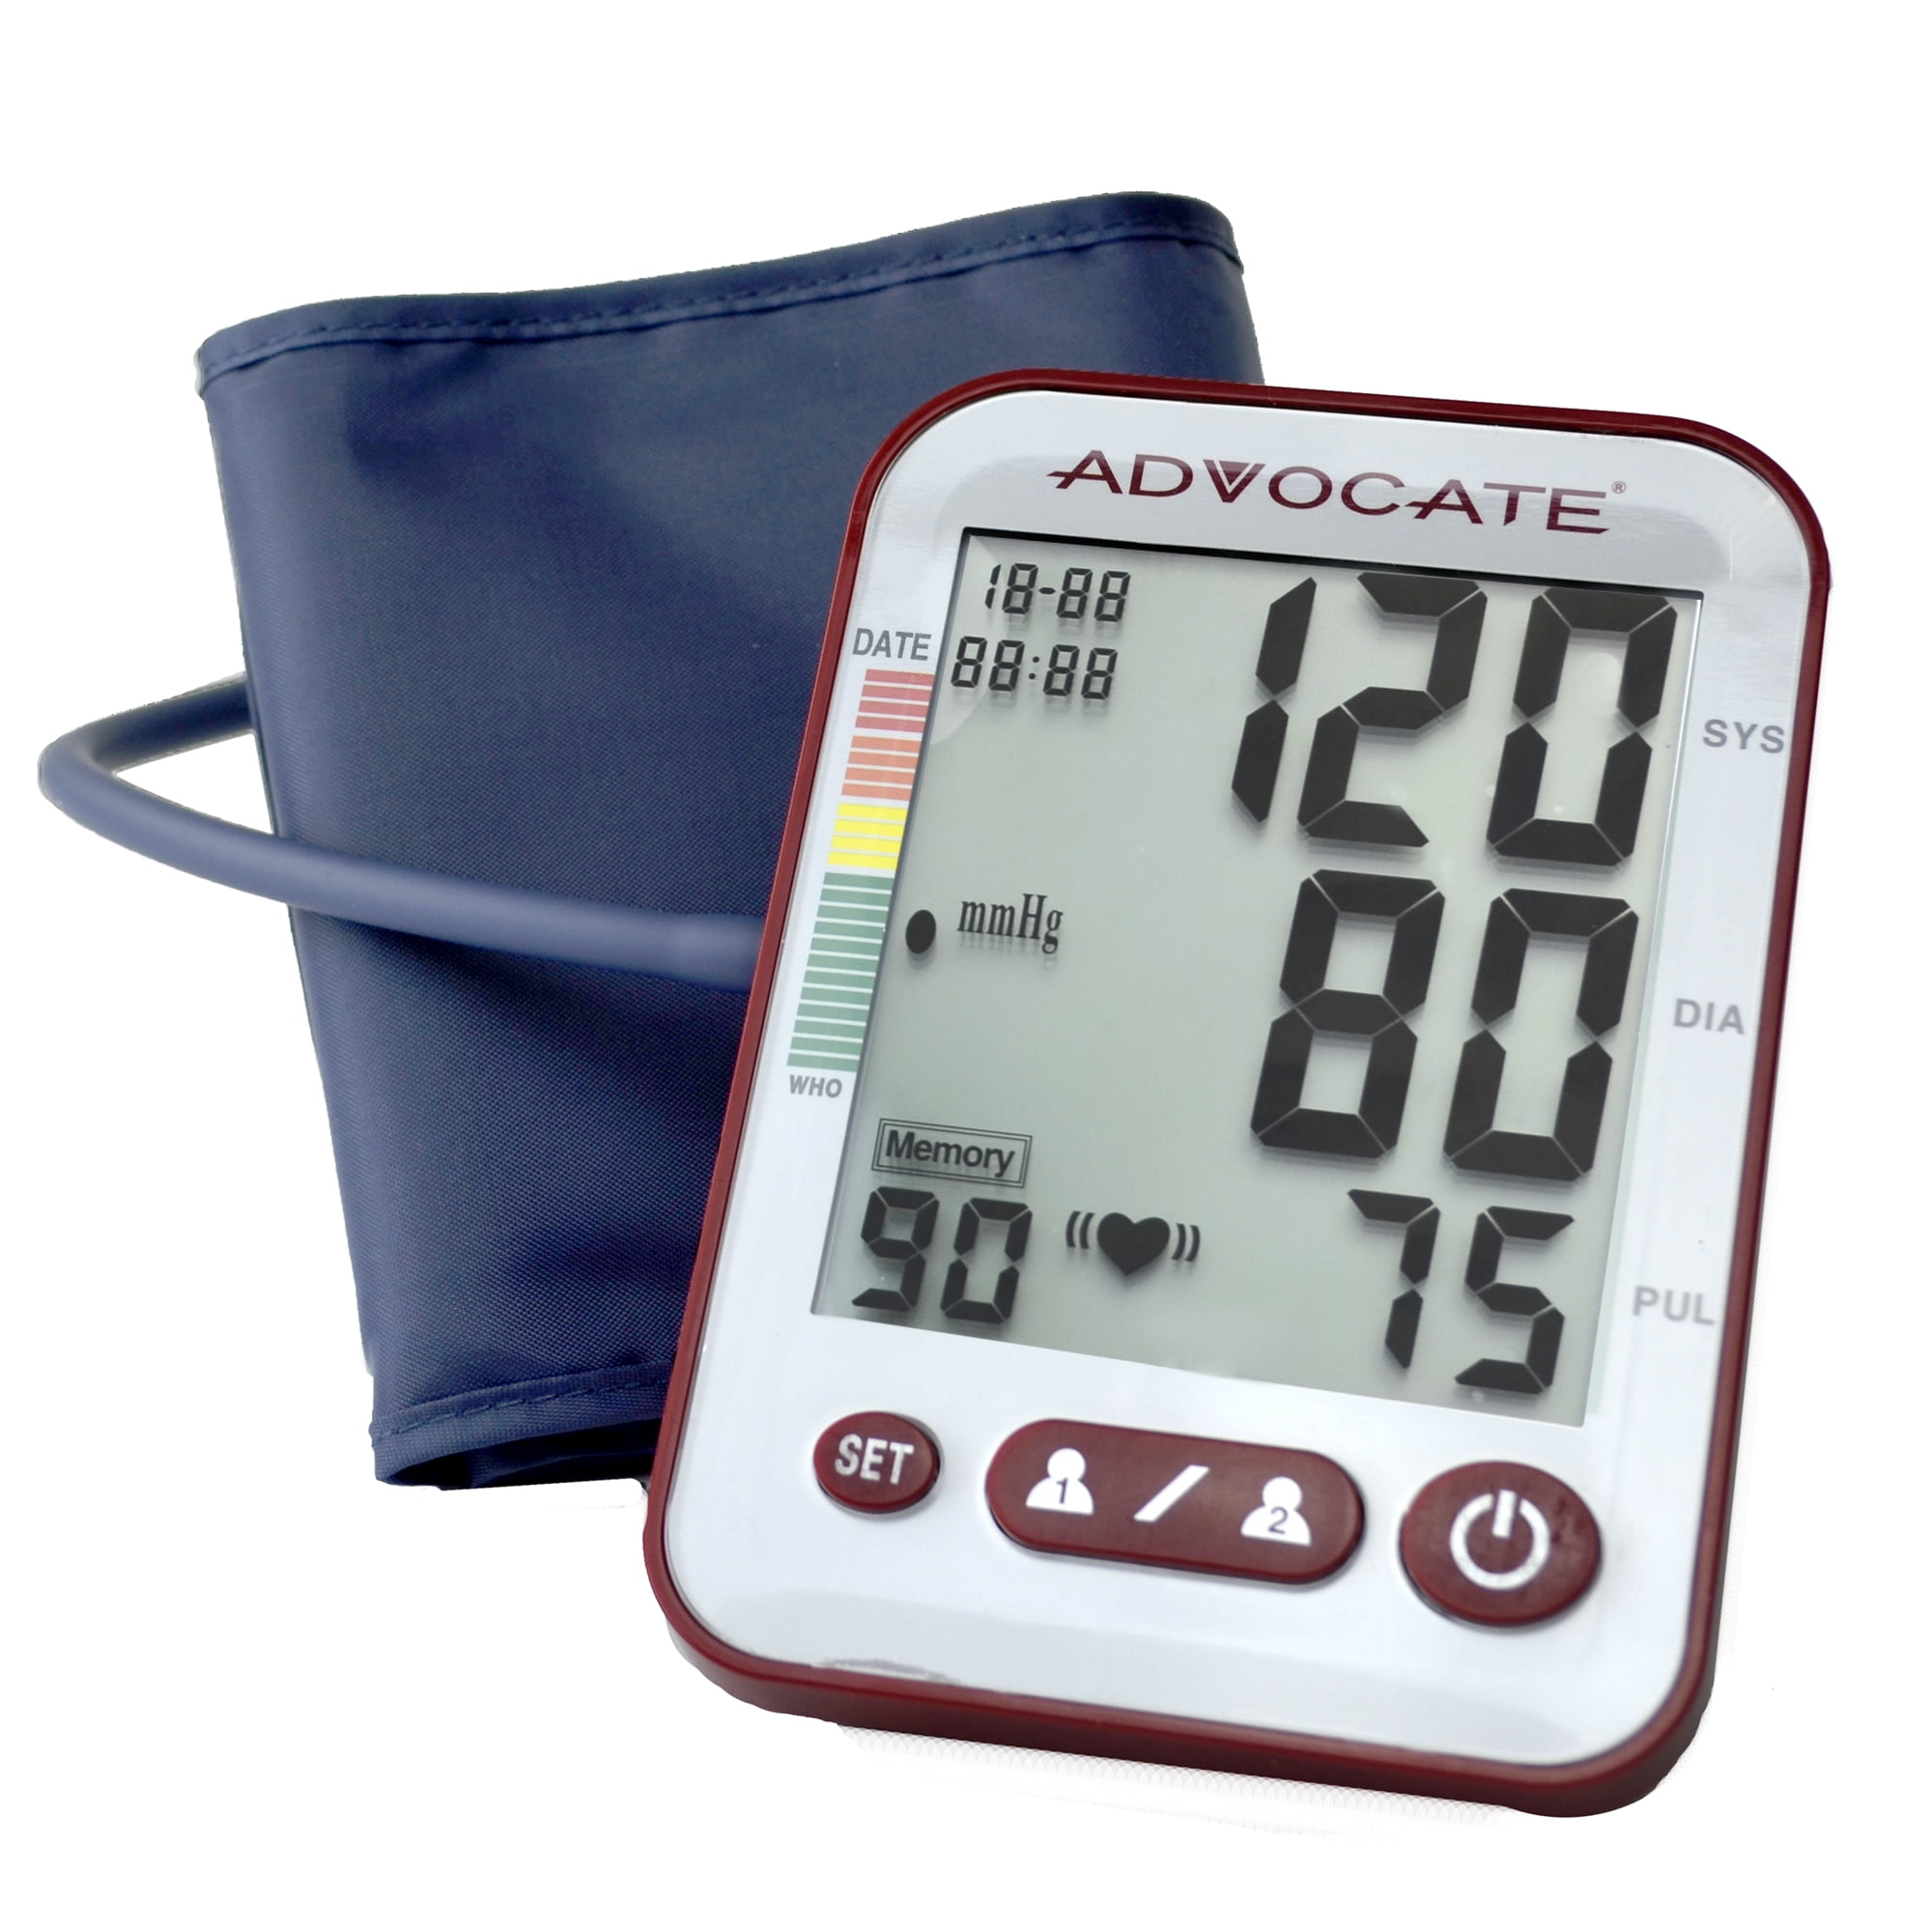 Equate 8000 Series Premium Upper Arm Cuff Blood Pressure Monitor